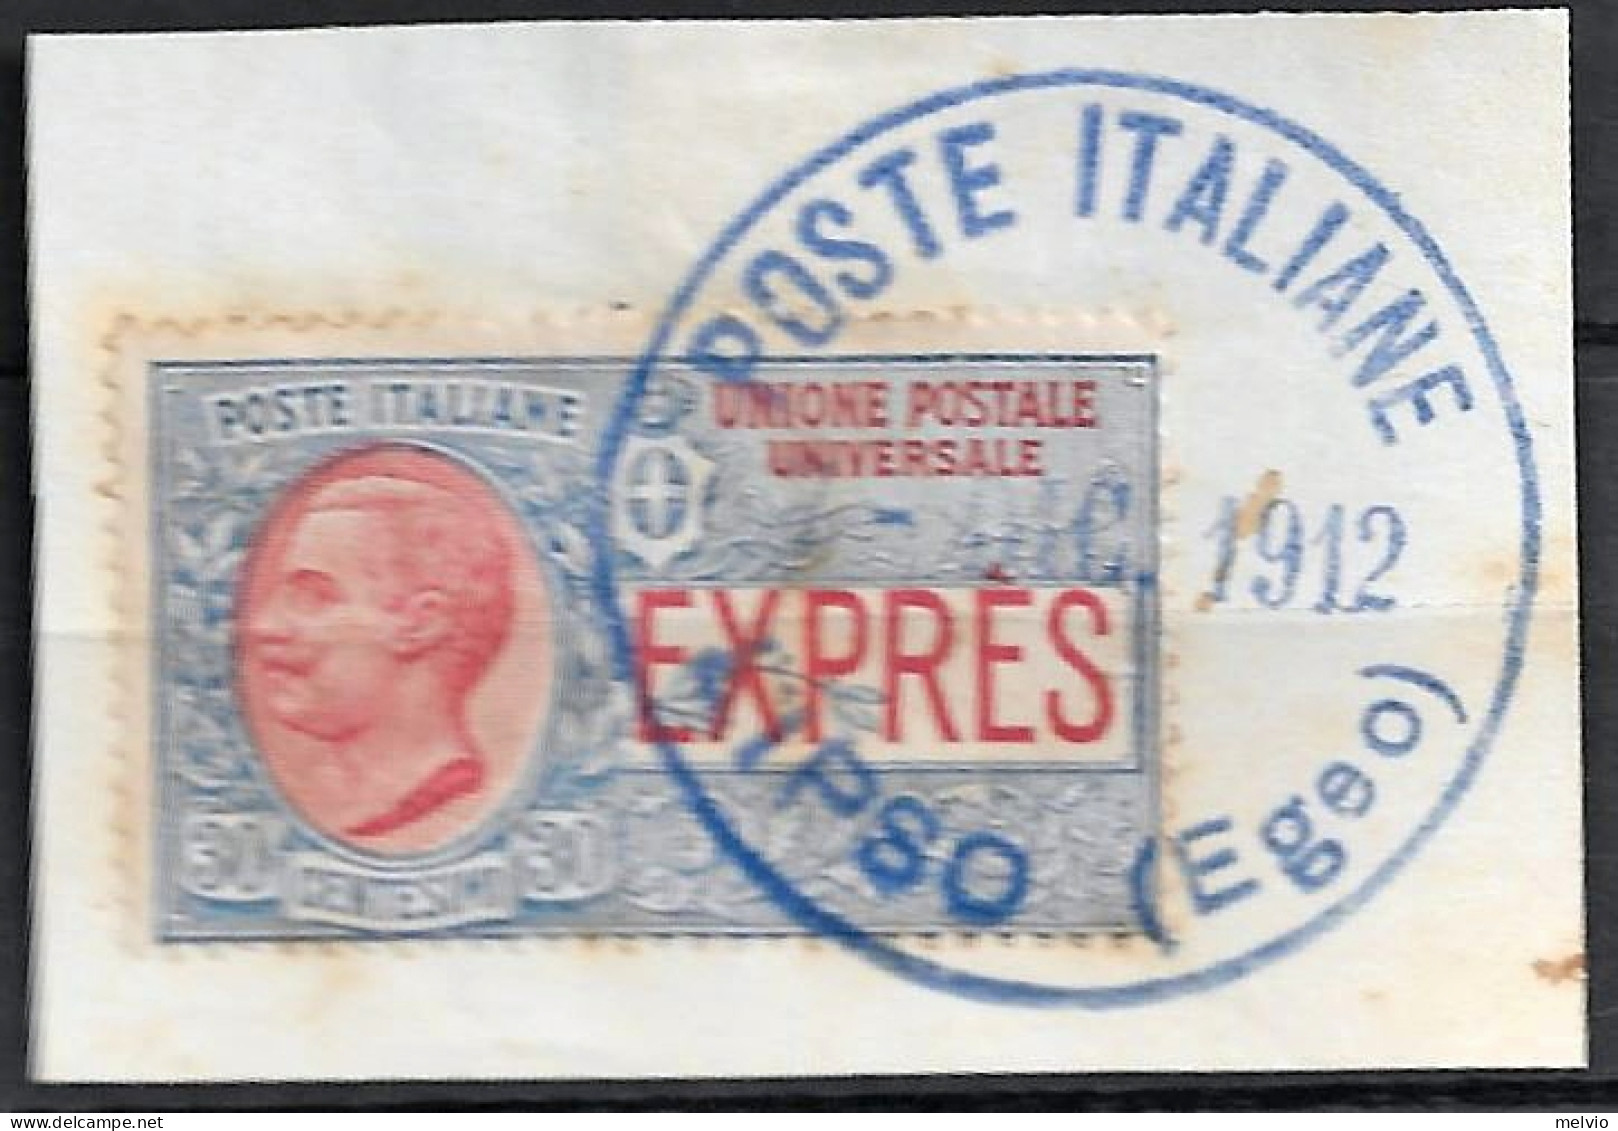 1912 POSTE ITALIANE/LIPSO (EGEO) Timbro Gomma Blu Su Frammento, Affrancato Regno - Egée (Lipso)